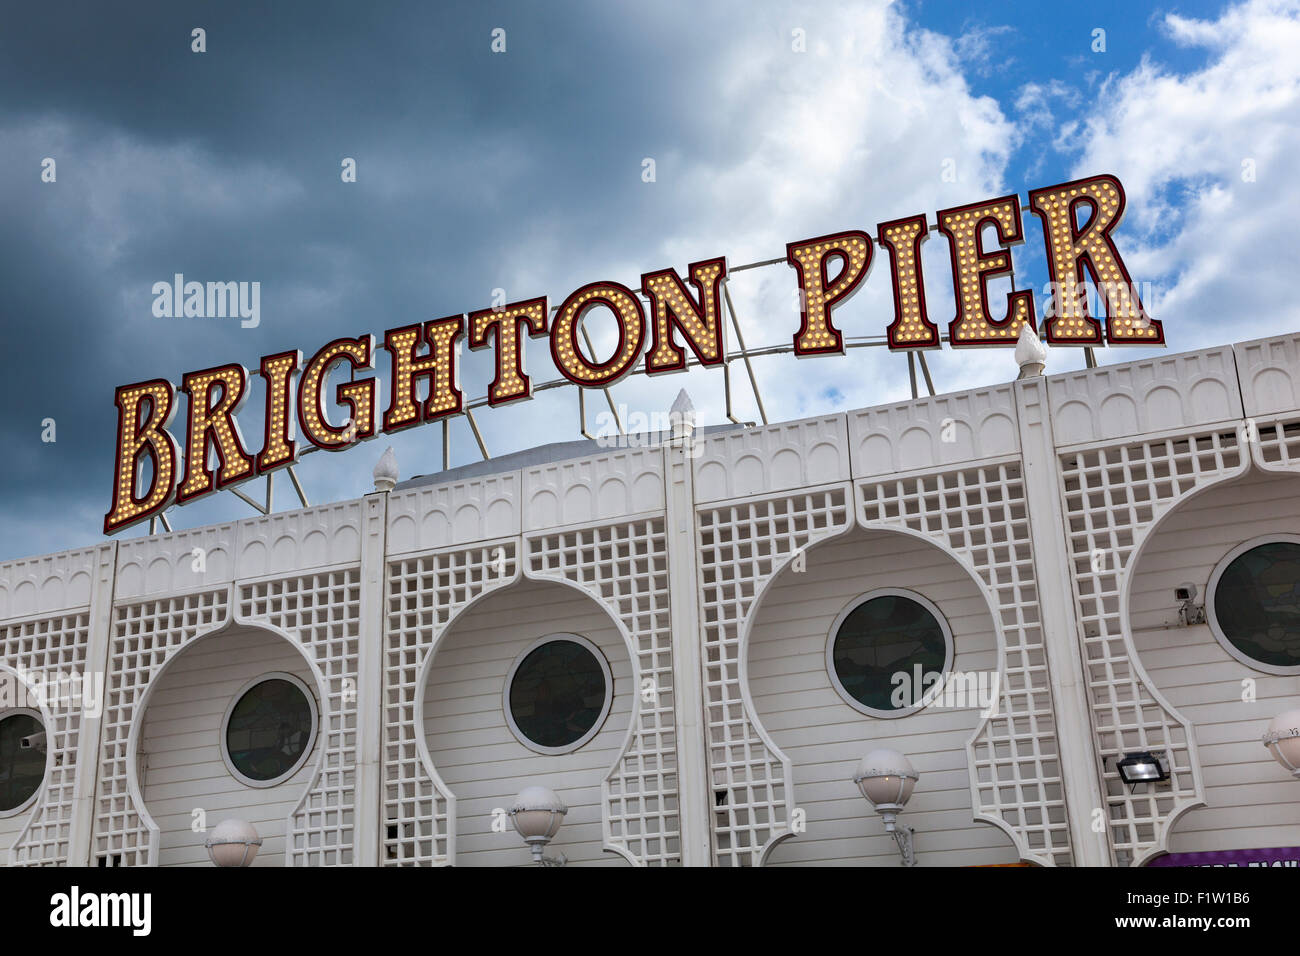 La jetée de Brighton, Brighton, UK sign Banque D'Images